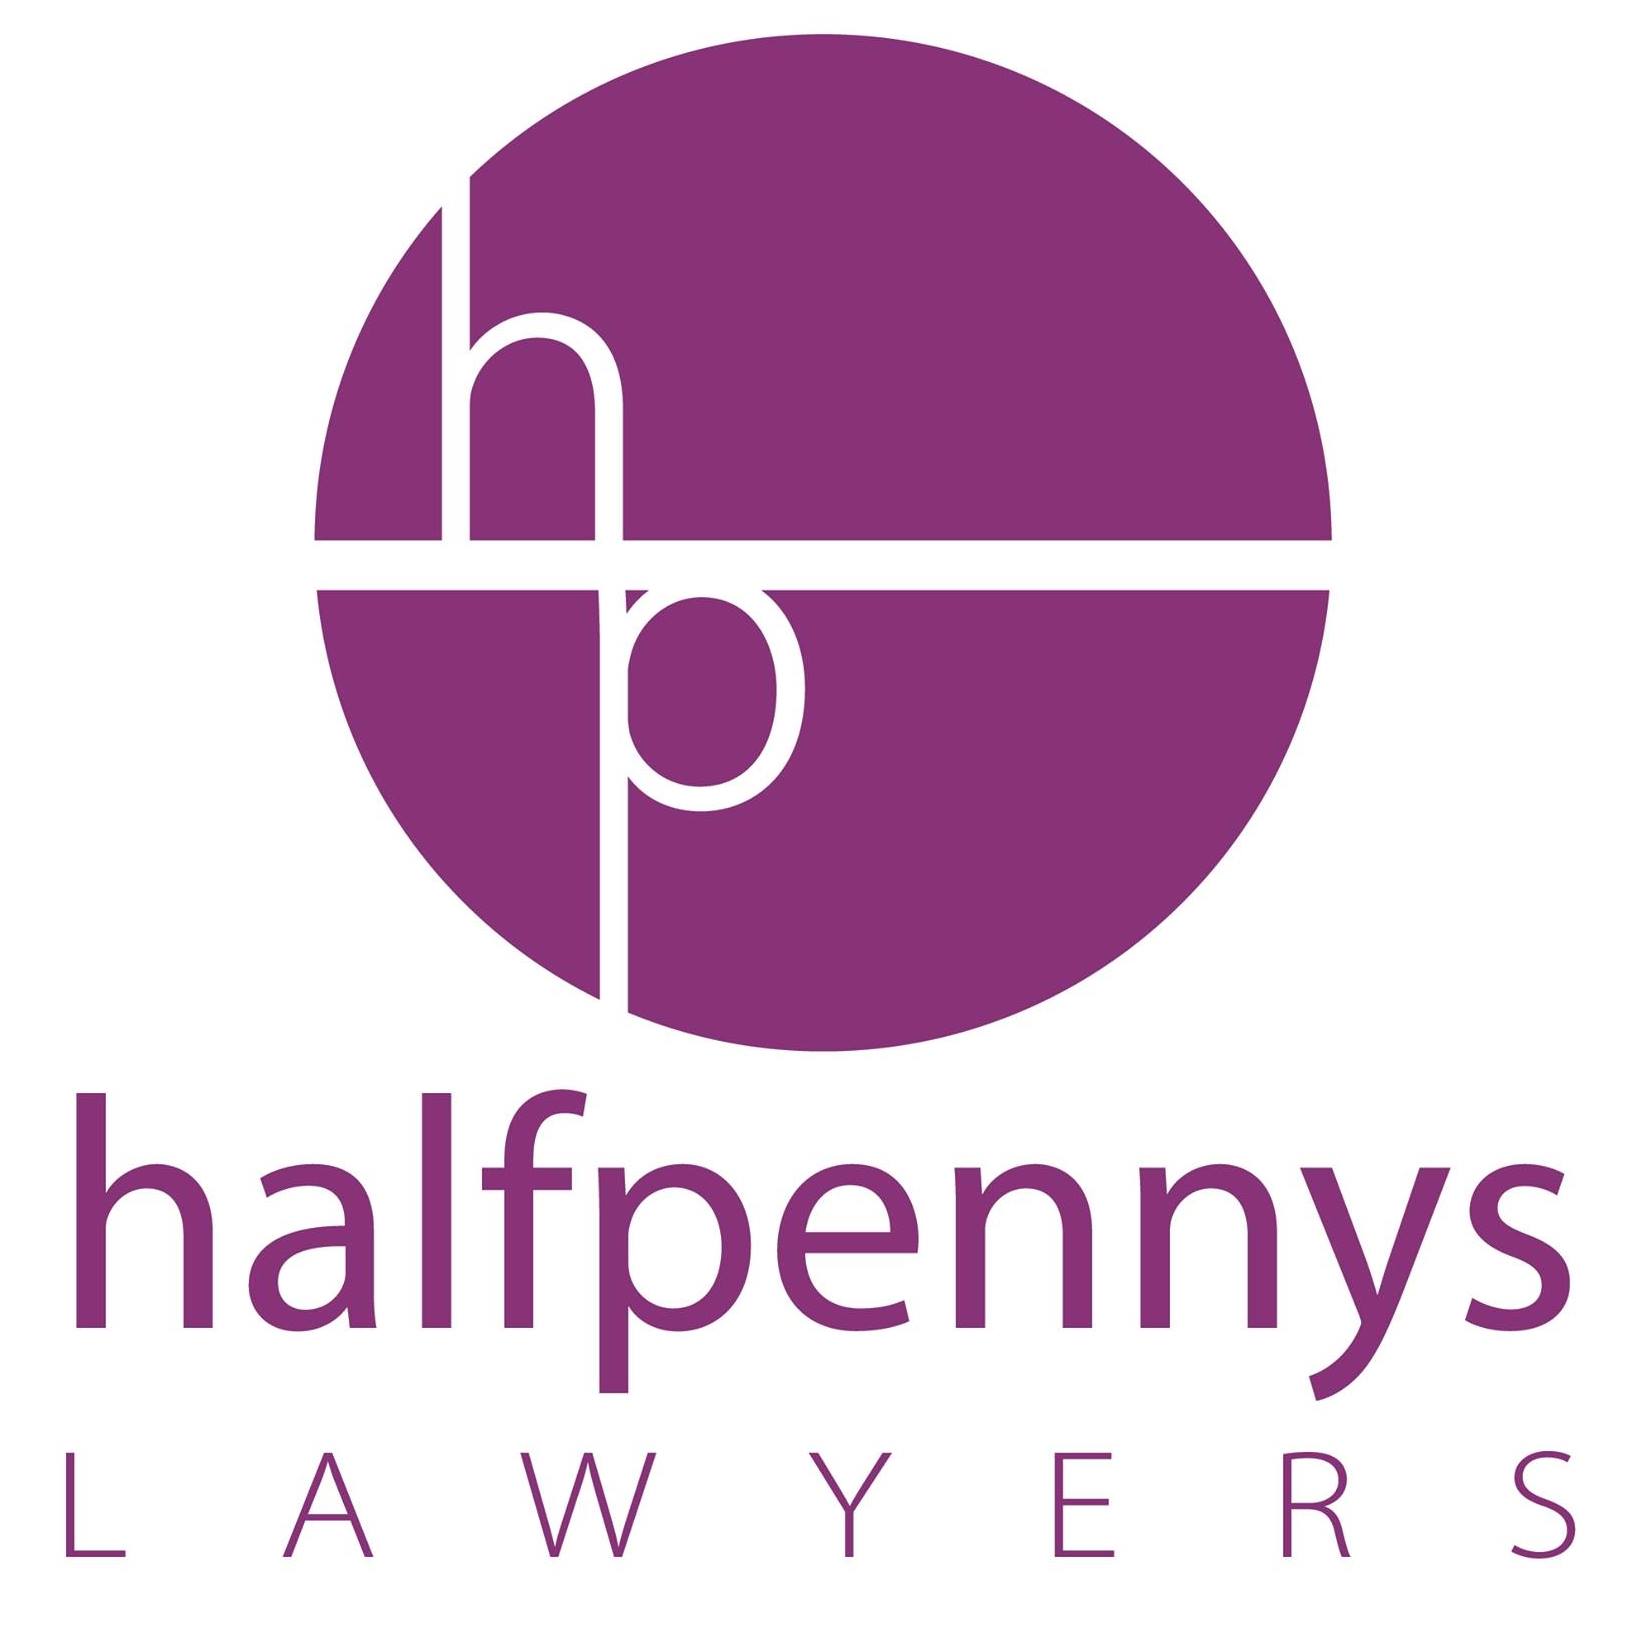 Halfpennys Lawyers